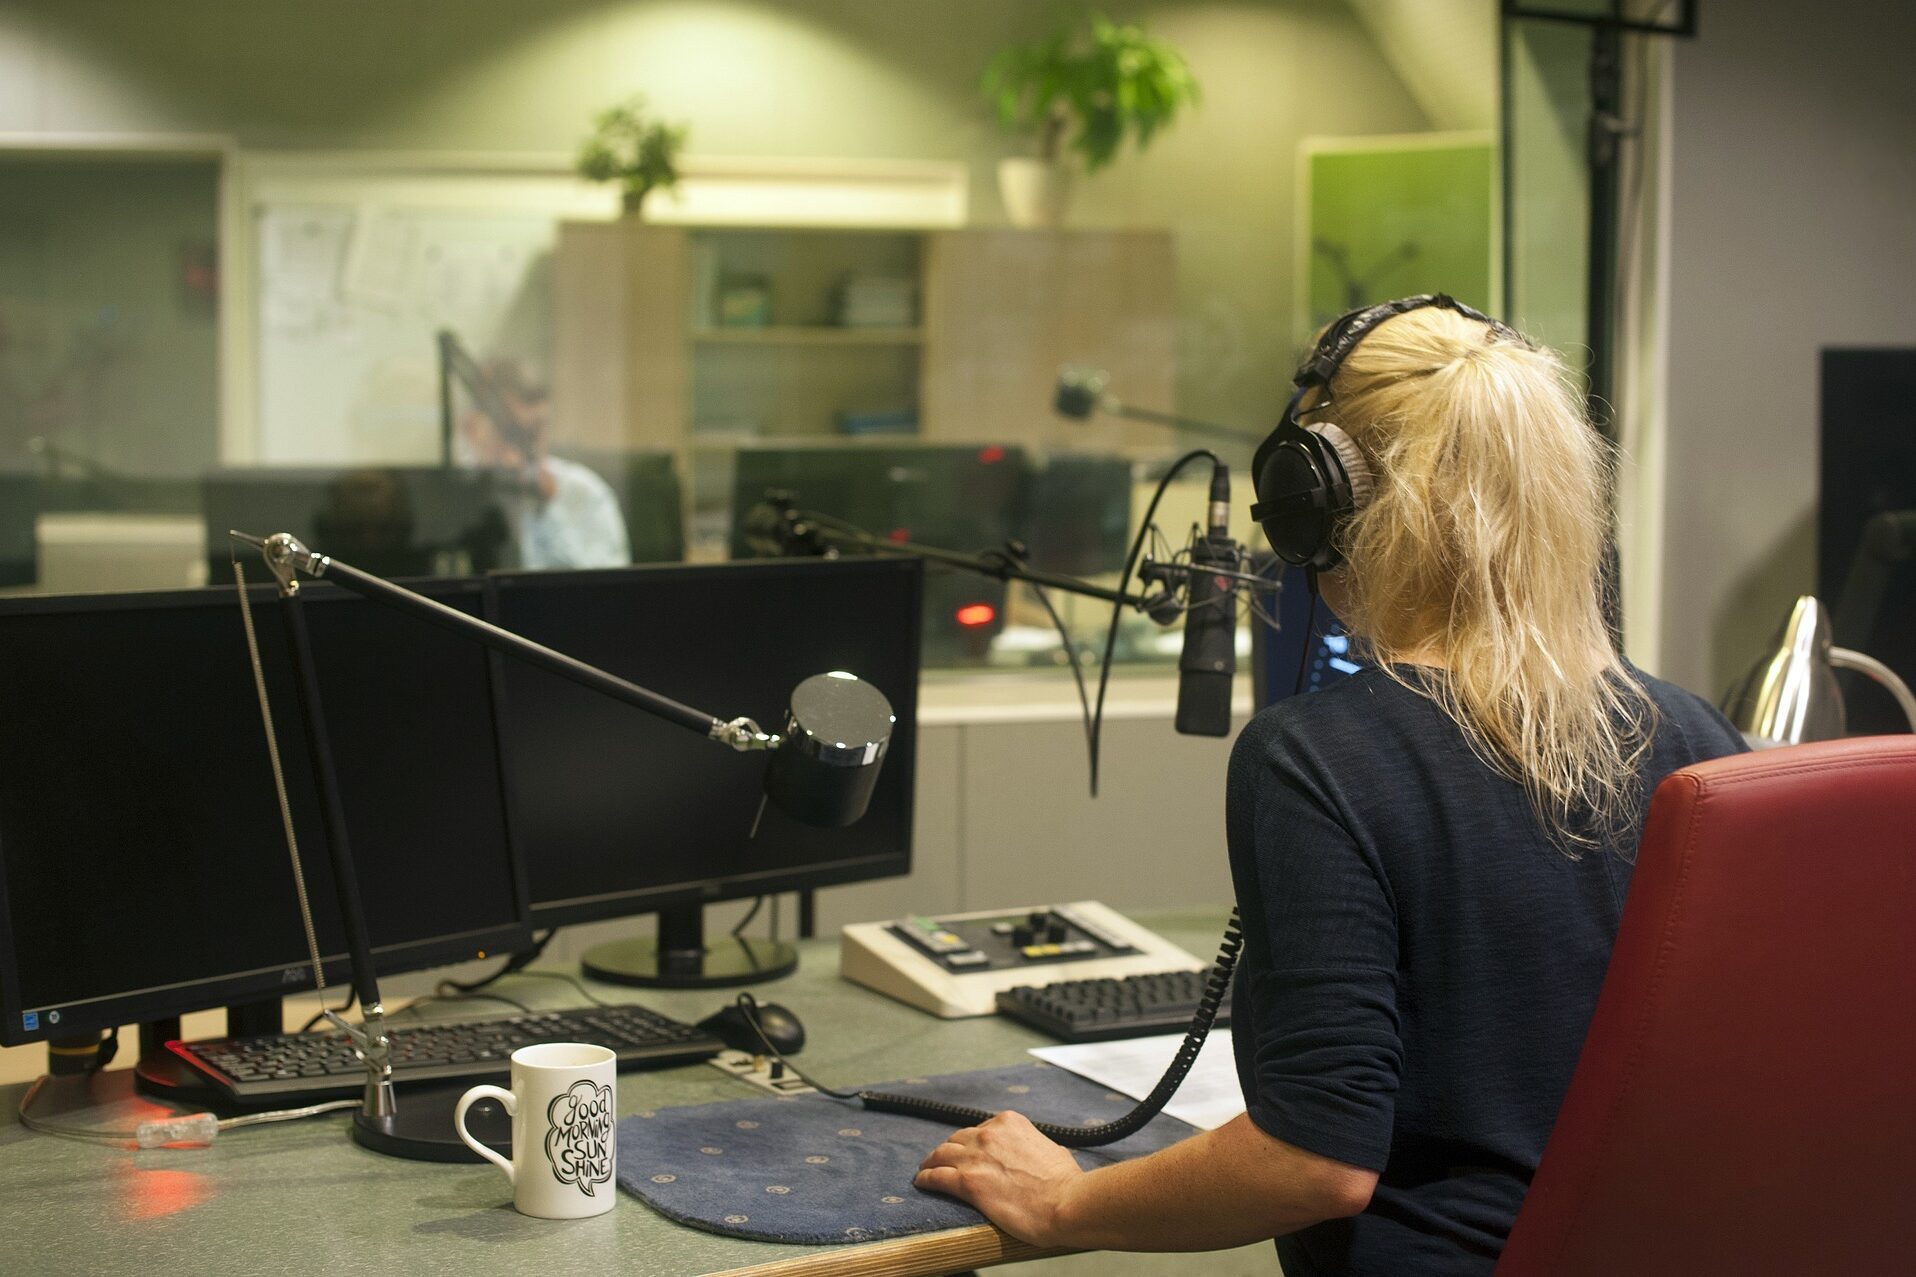 Abbildung einer jungen Frau, die eine Radiosendung aufnimmt oder moderiert.